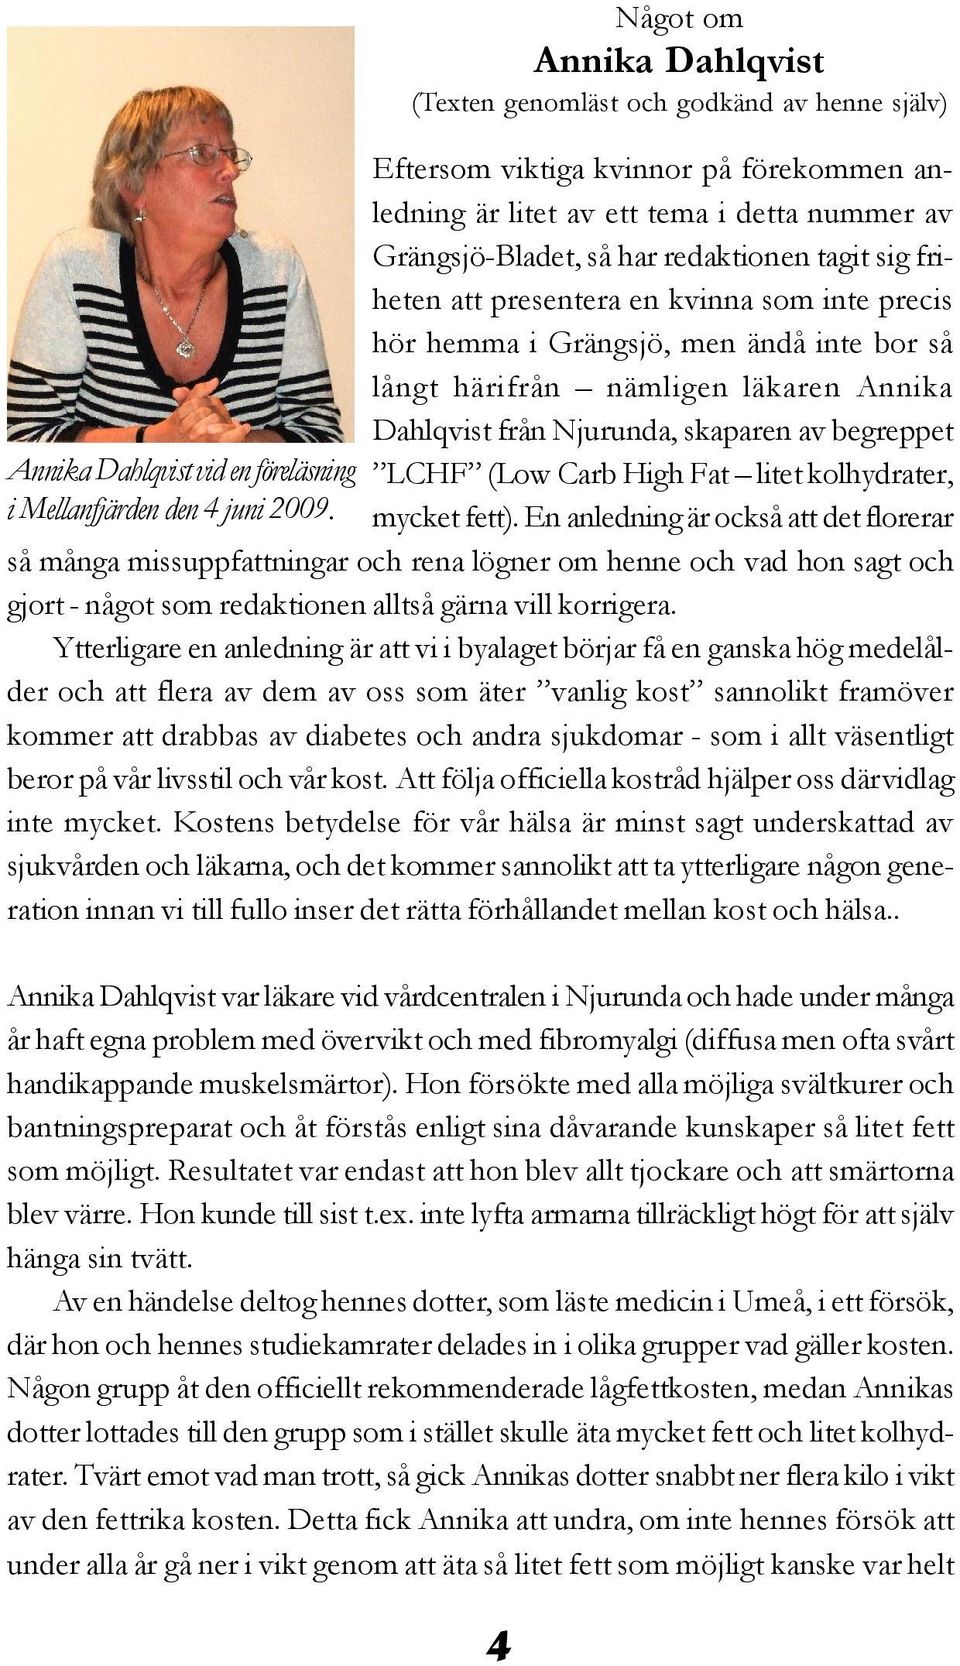 tagit sig friheten att presentera en kvinna som inte precis hör hemma i Grängsjö, men ändå inte bor så långt härifrån nämligen läkaren Annika Dahlqvist från Njurunda, skaparen av begreppet LCHF (Low